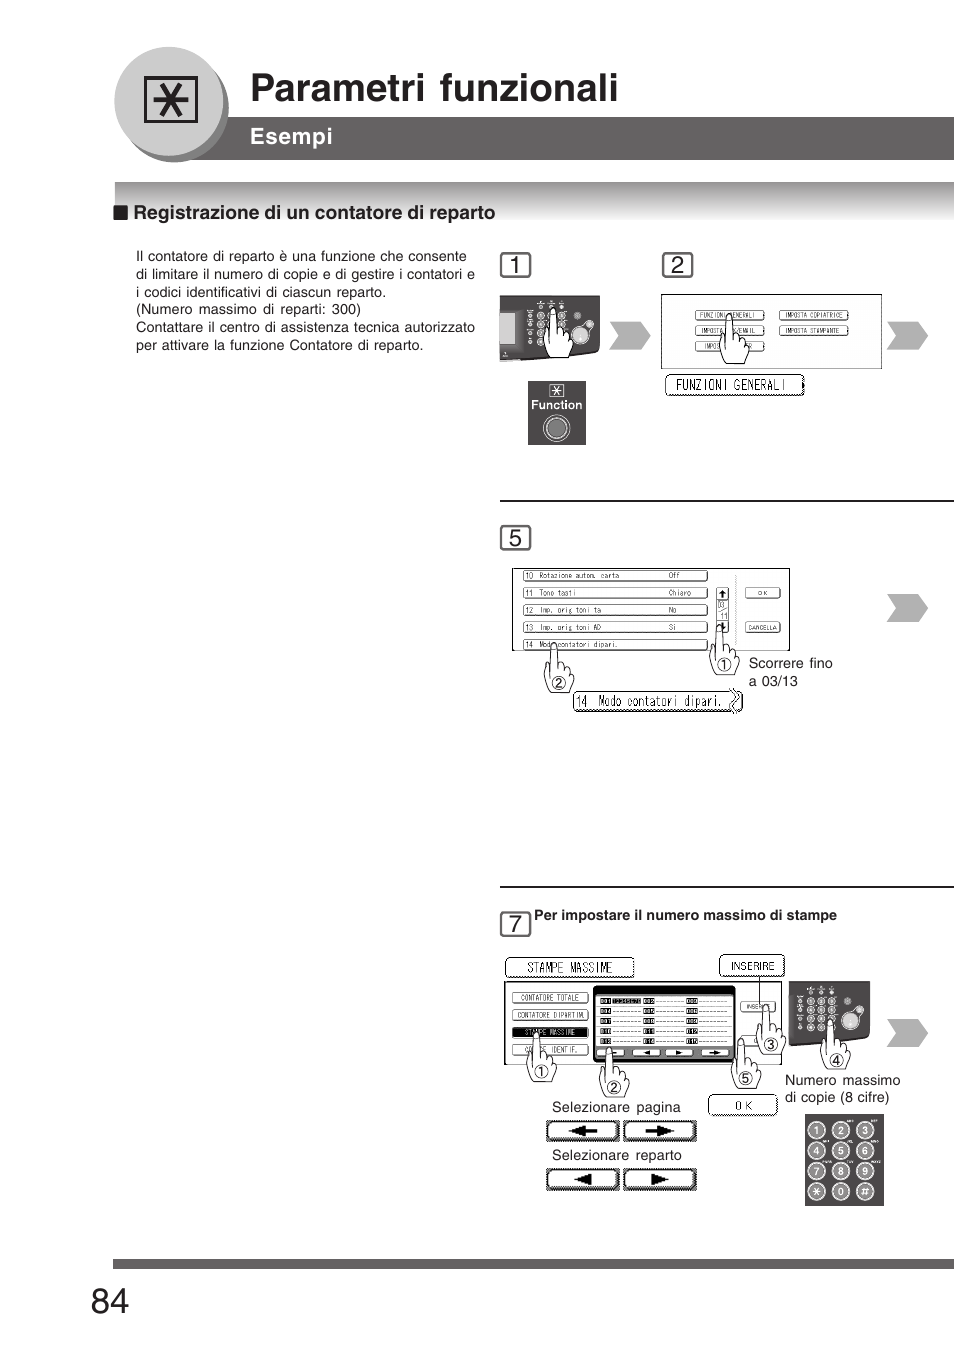 Registrazione di un contatore di reparto, Parametri funzionali | Panasonic DP8045 Manuale d'uso | Pagina 84 / 92